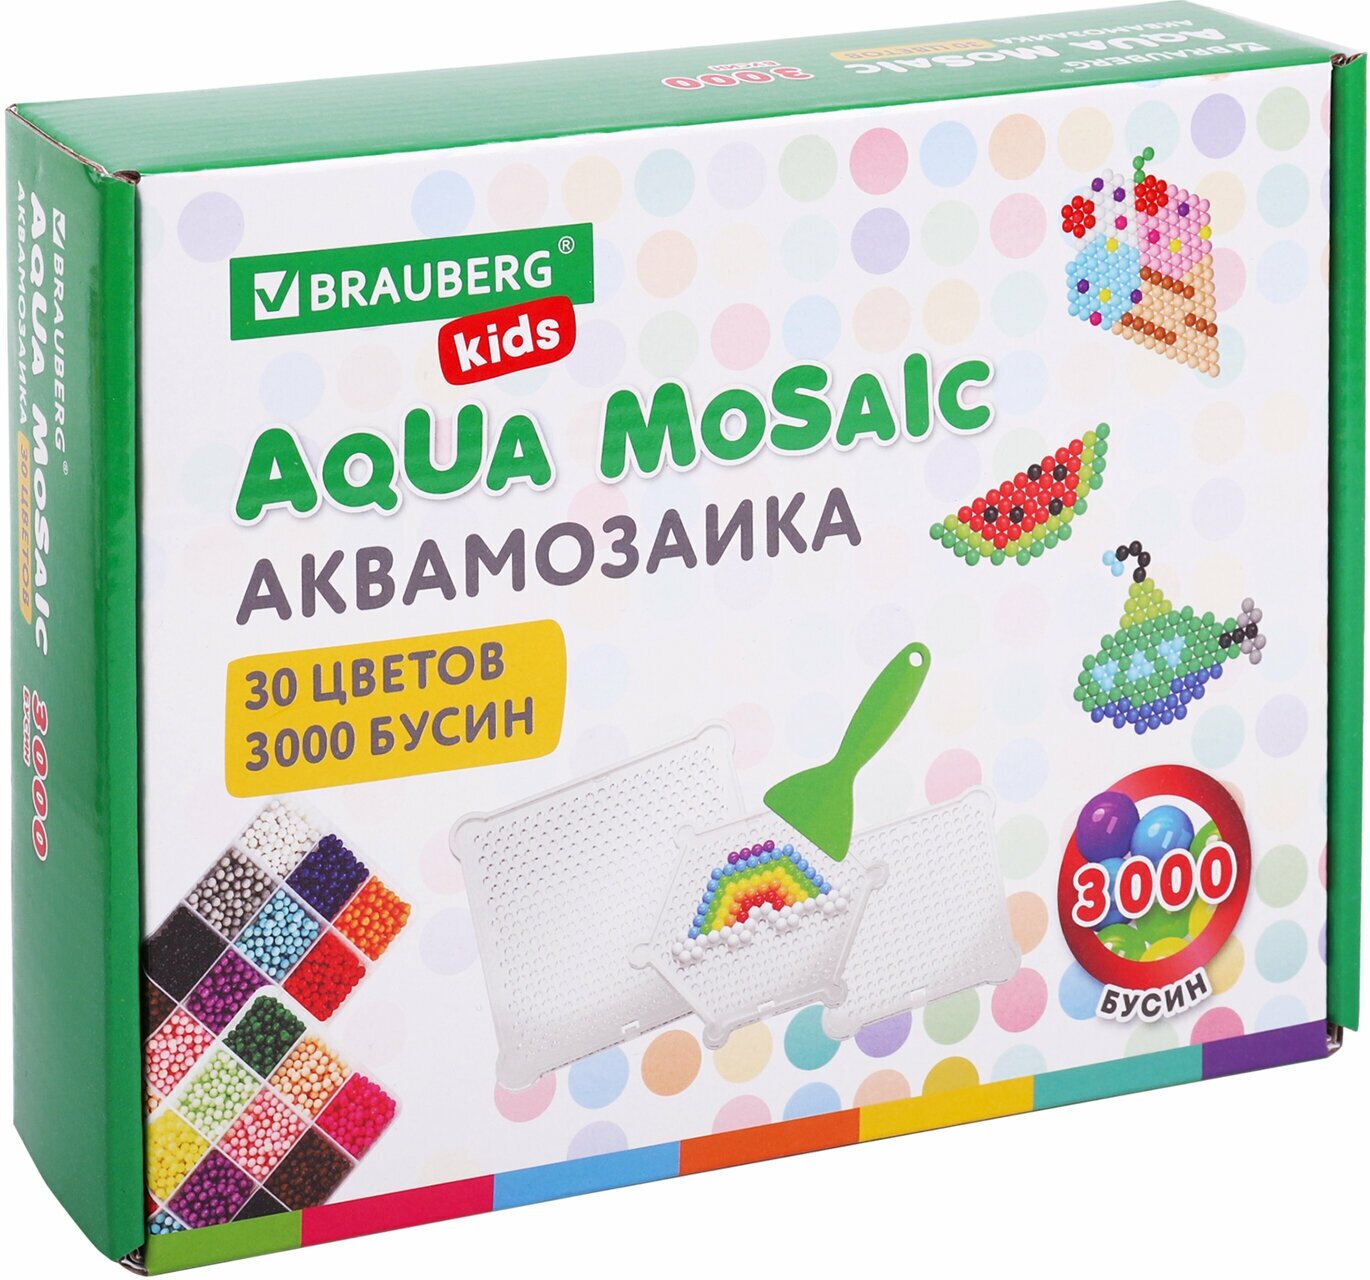 Аквамозаика Aqua Pixels 30 цветов 3000 бусин, с трафаретами, инструментами и аксессуарами, Brauberg, 664915